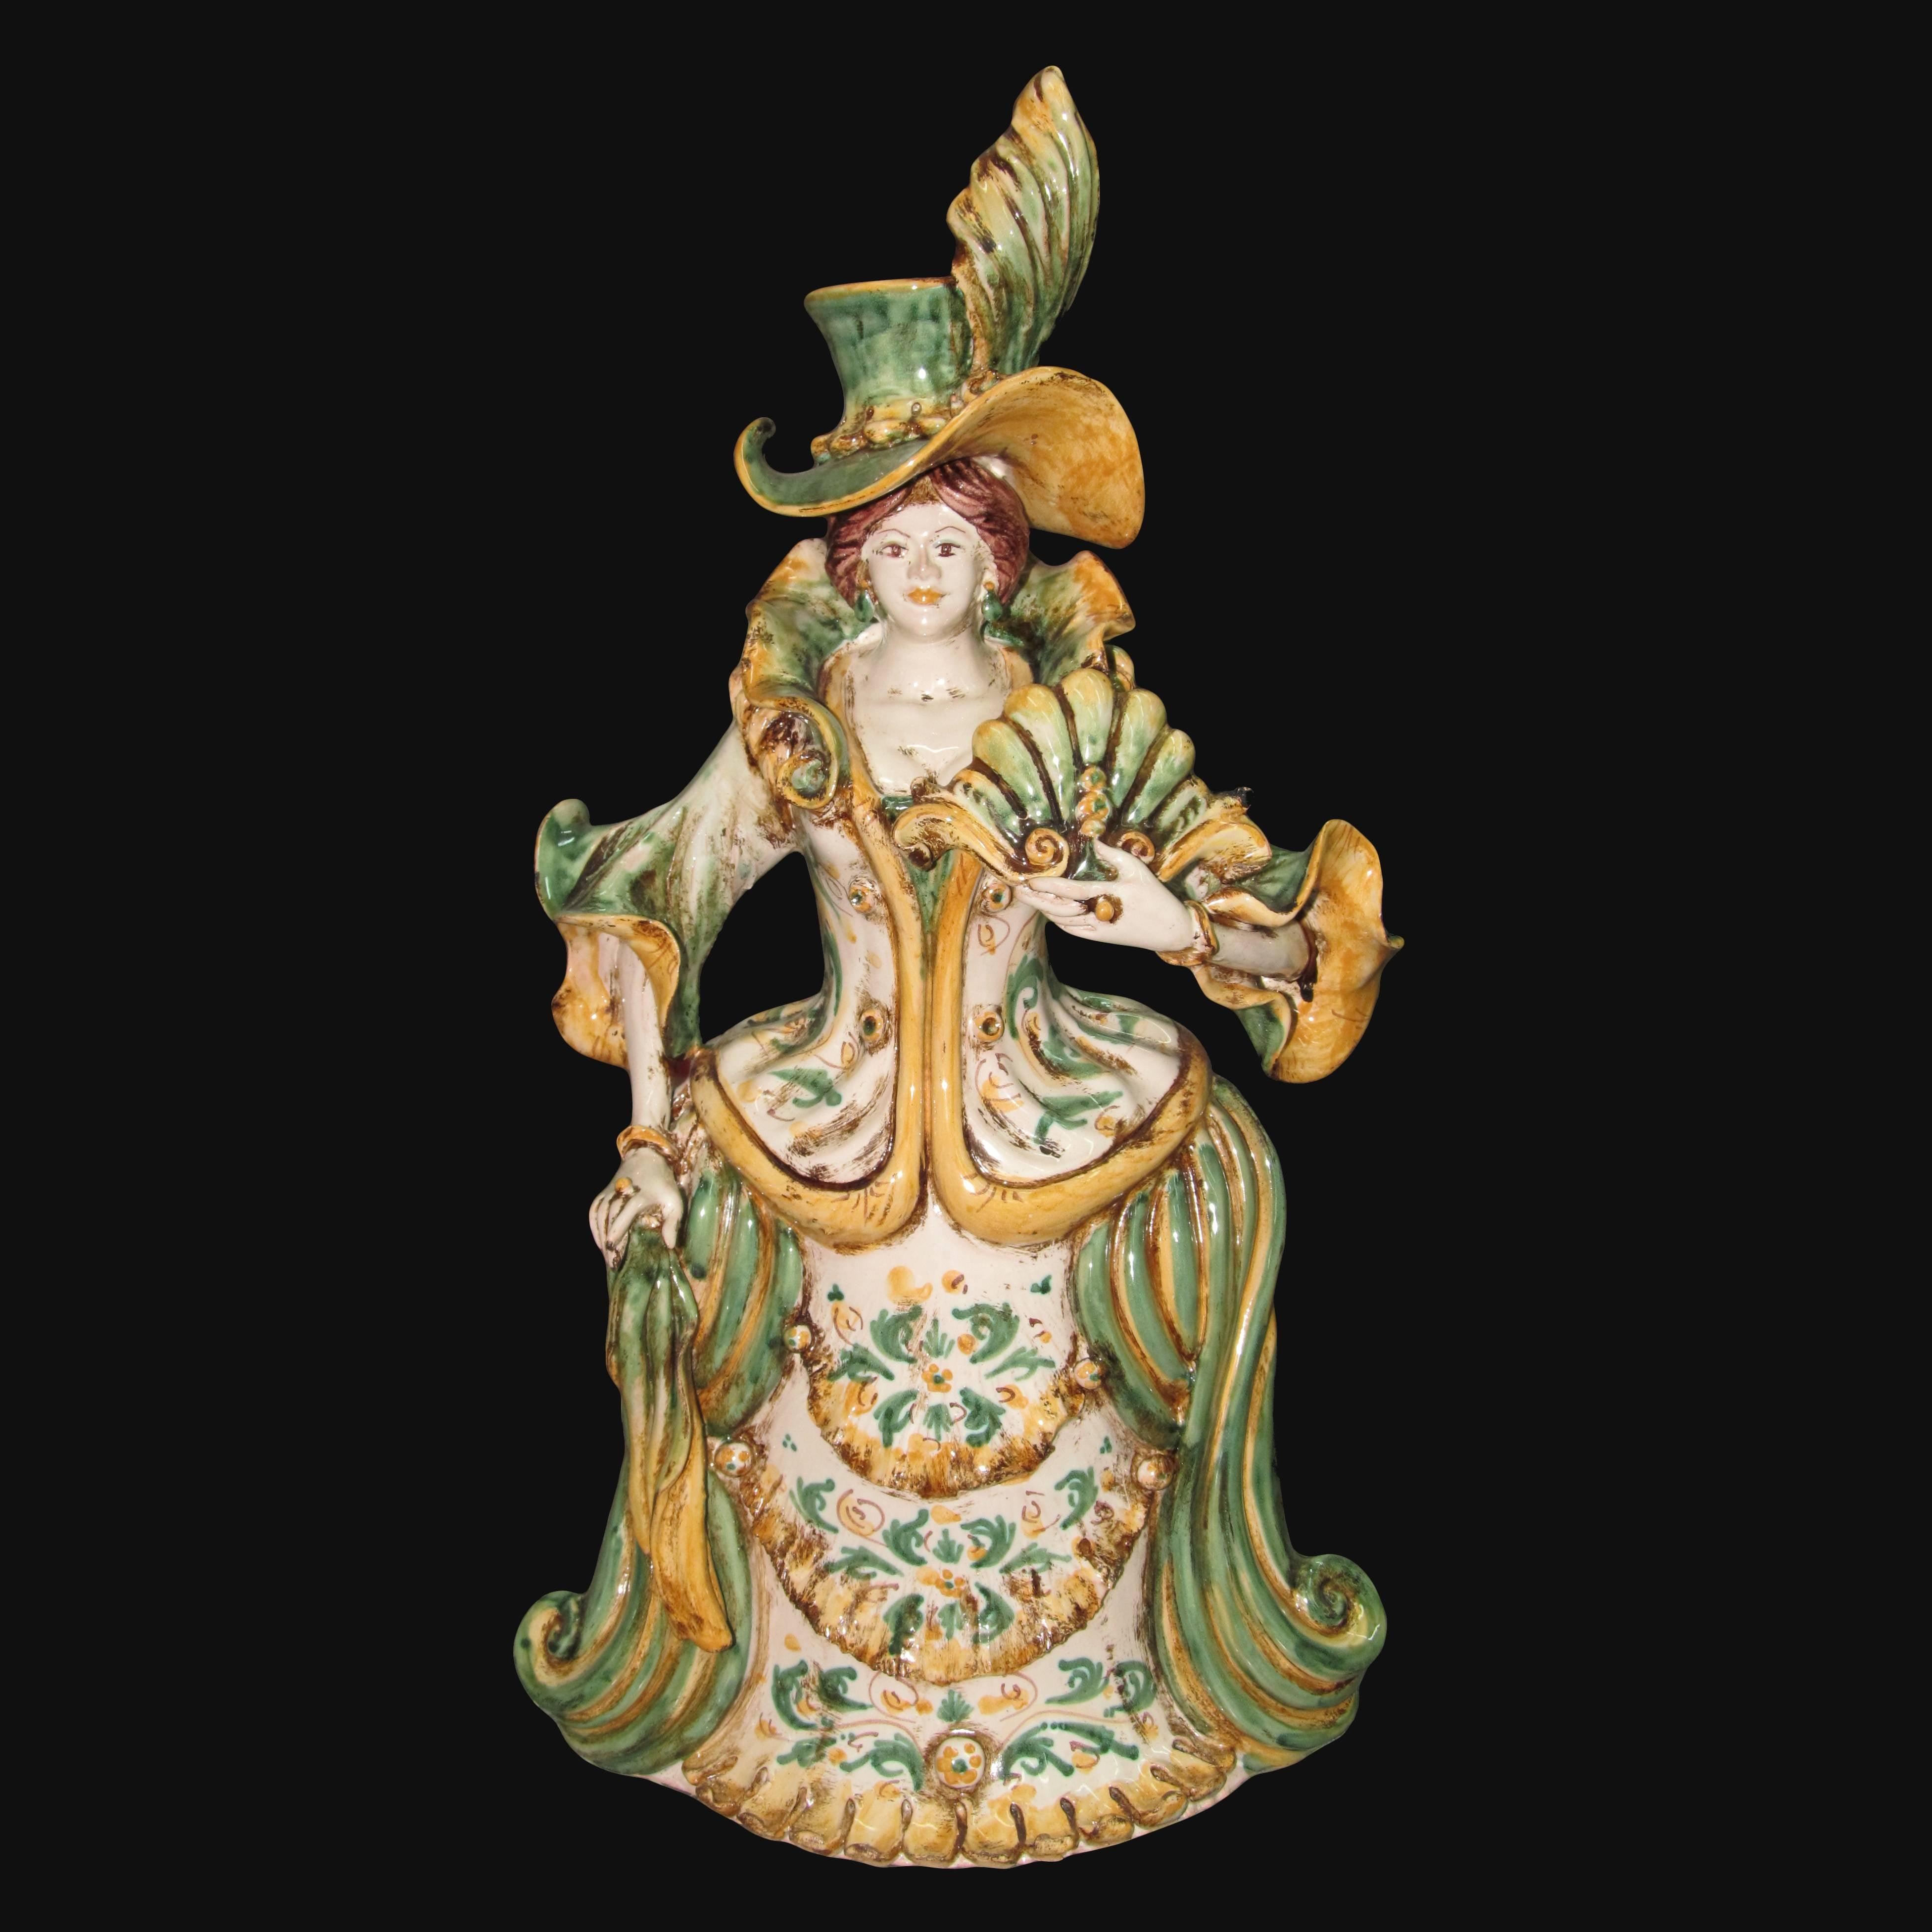 Lumiera grande femmina h 40 in verde/arancio - Modellate a mano - Ceramiche di Caltagirone Sofia